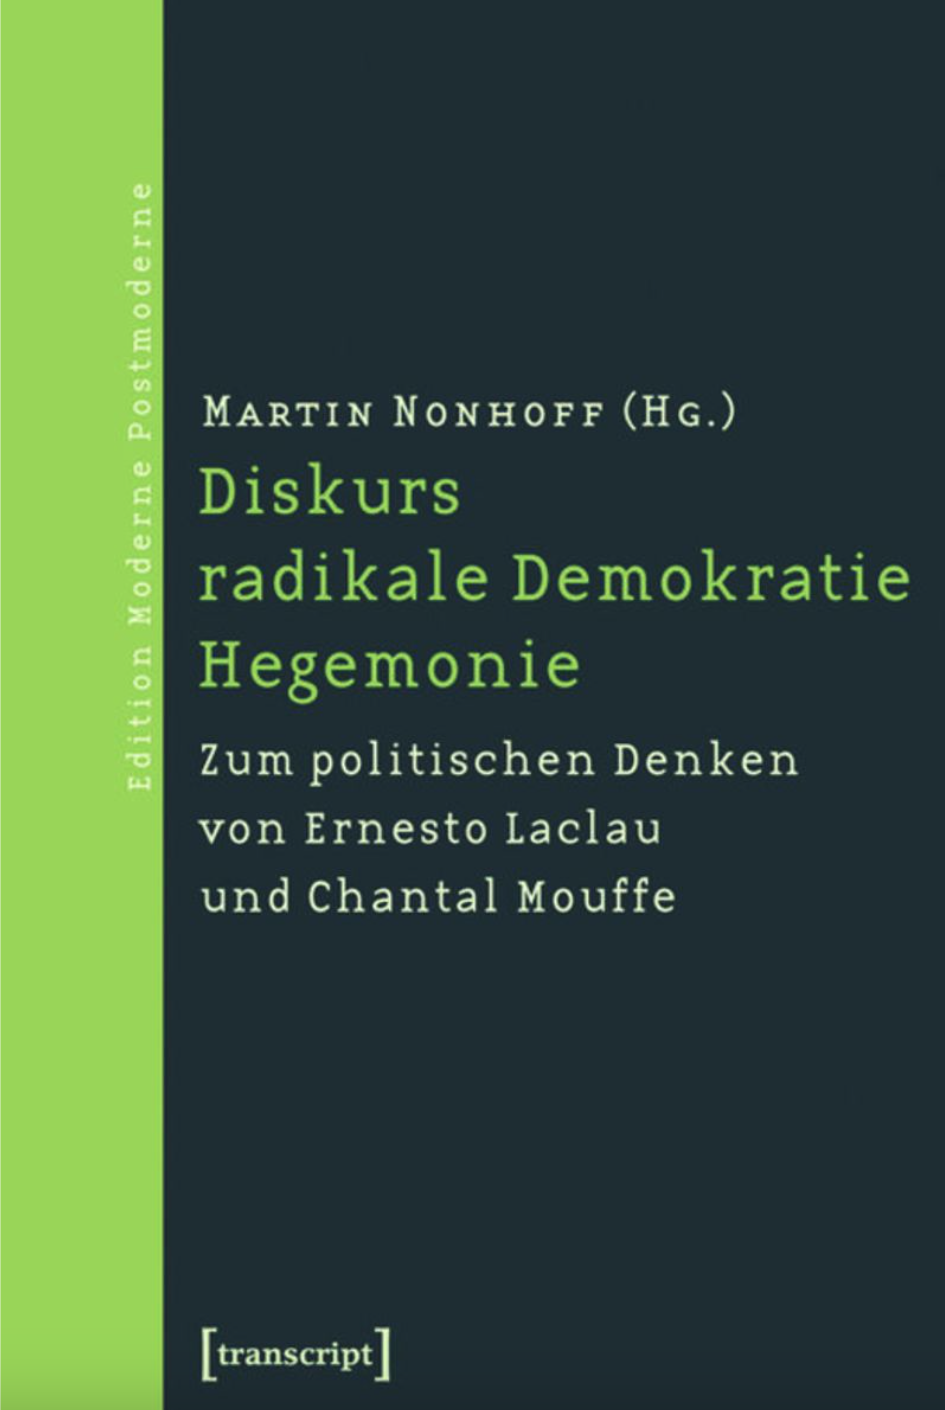 cover "Diskurs radikale Demokratie Hegemonie"